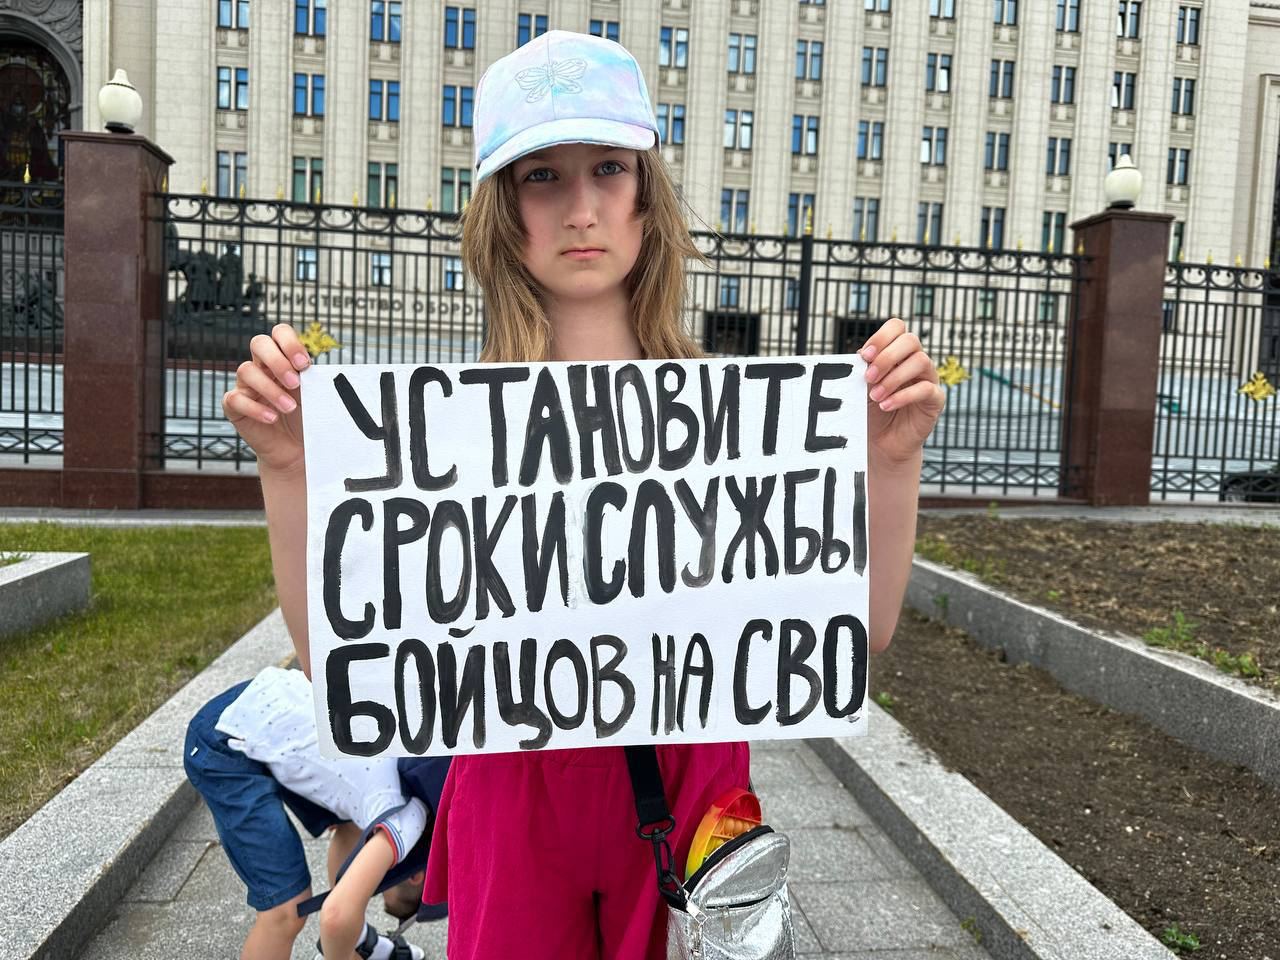 Фото (2) участниц пикета в Москве. Источник - Телеграм